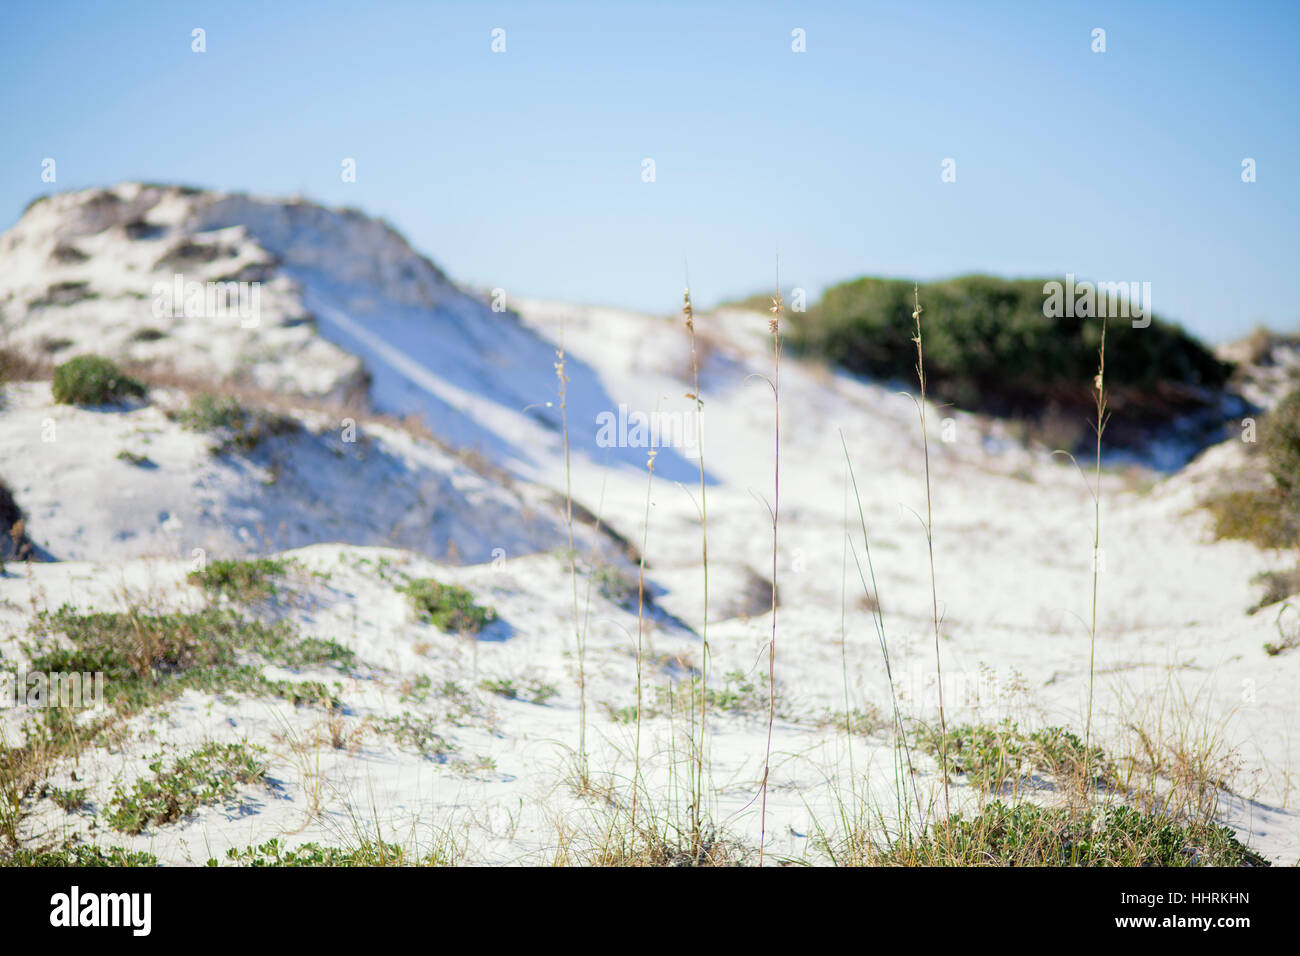 Schönen weißen Sanddünen im Hintergrund mit dem Fokus auf hohe Sehafer im Vordergrund. Stockfoto